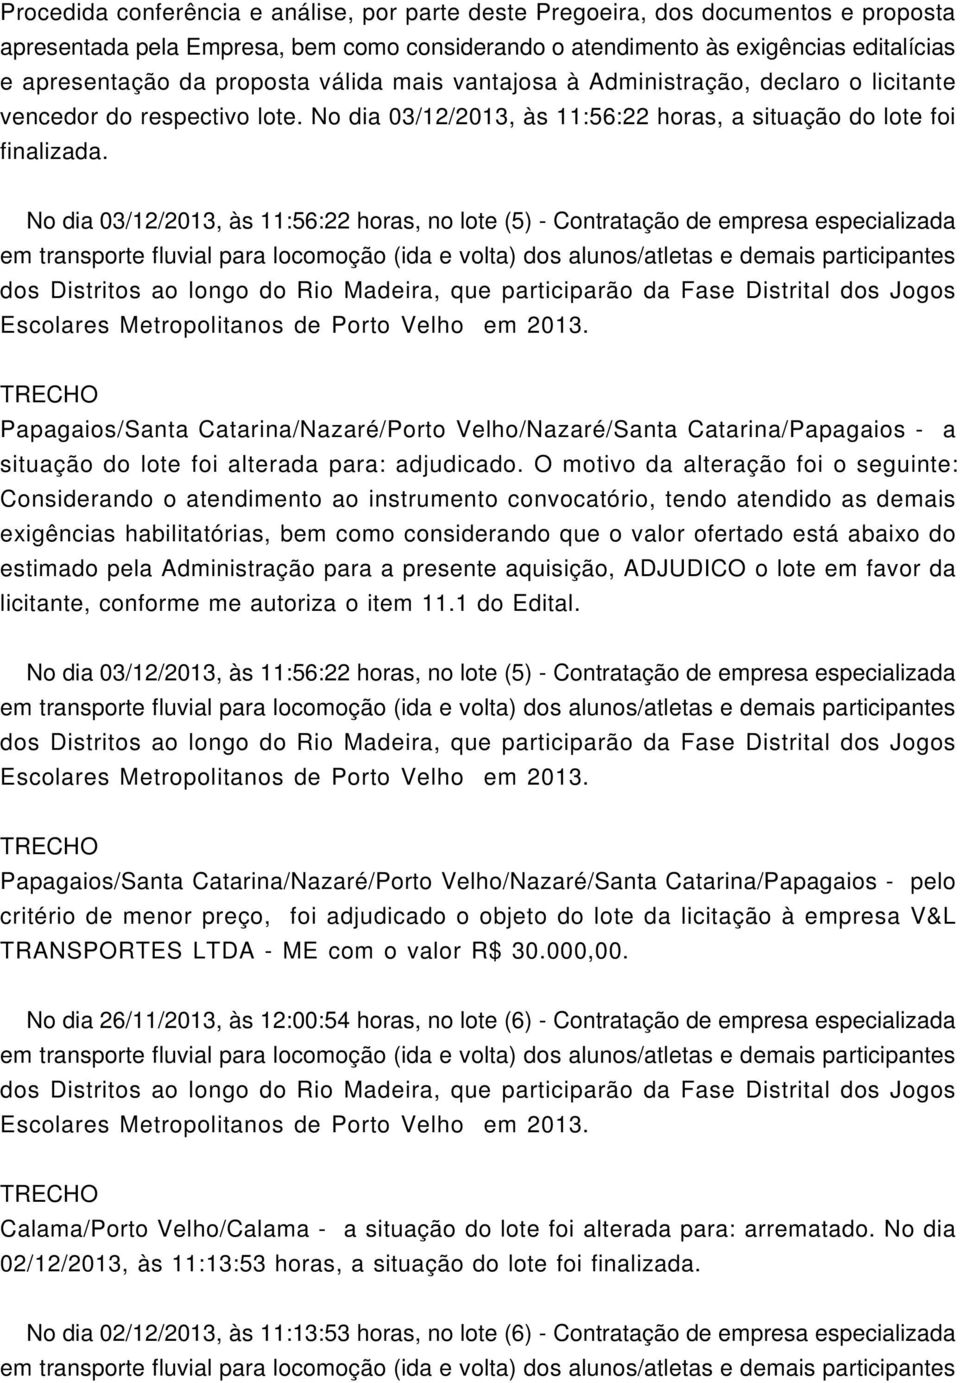 No dia 03/12/2013, às 11:56:22 horas, no lote (5) - Contratação de empresa especializada Papagaios/Santa Catarina/Nazaré/Porto Velho/Nazaré/Santa Catarina/Papagaios - a situação do lote foi alterada